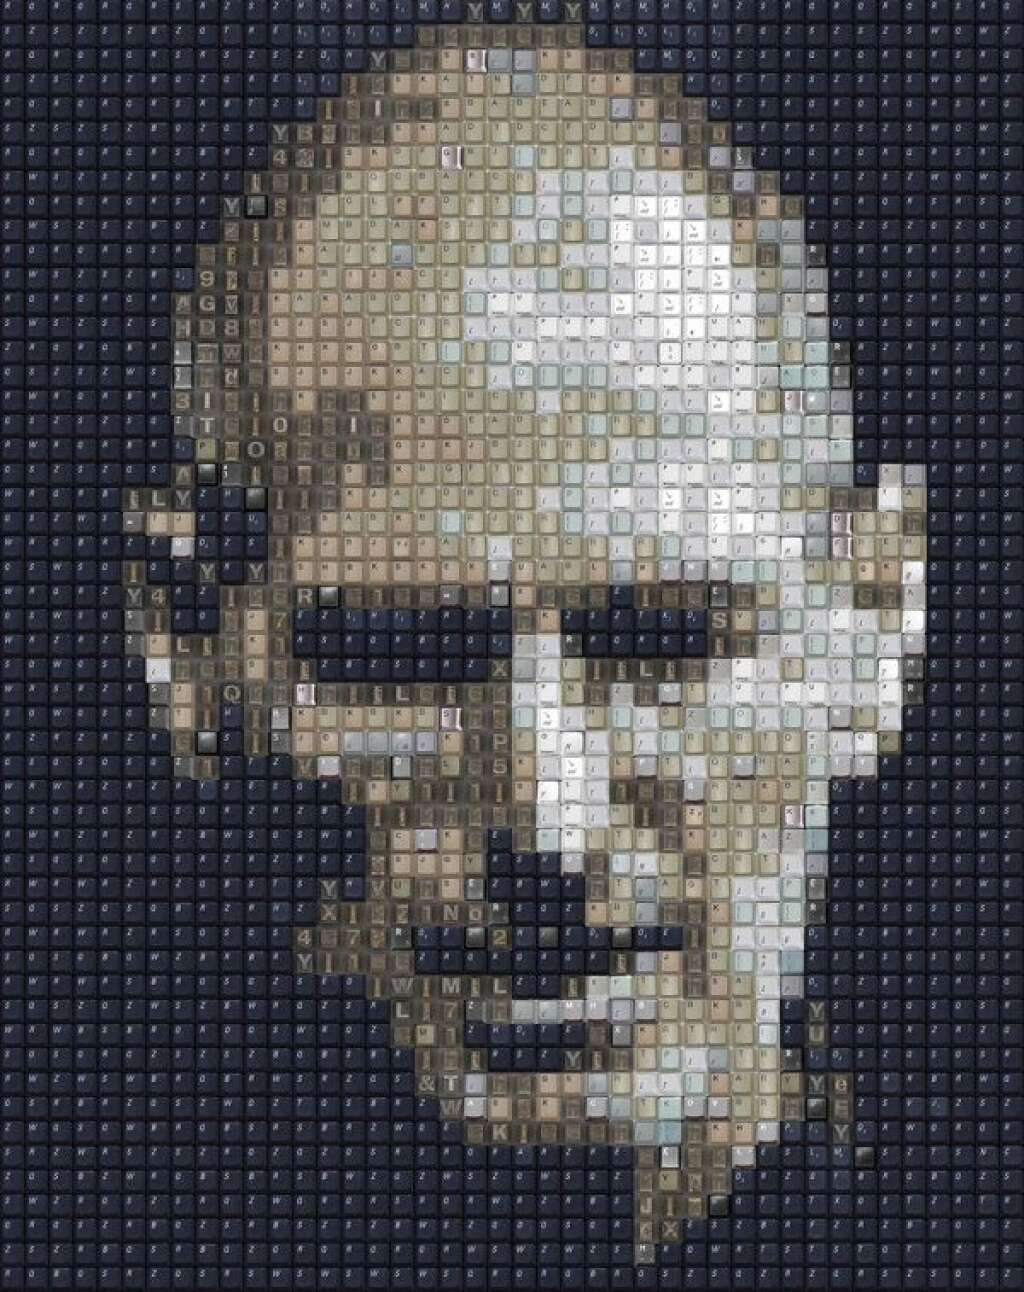 Le fondateur d'Apple Steve Jobs -